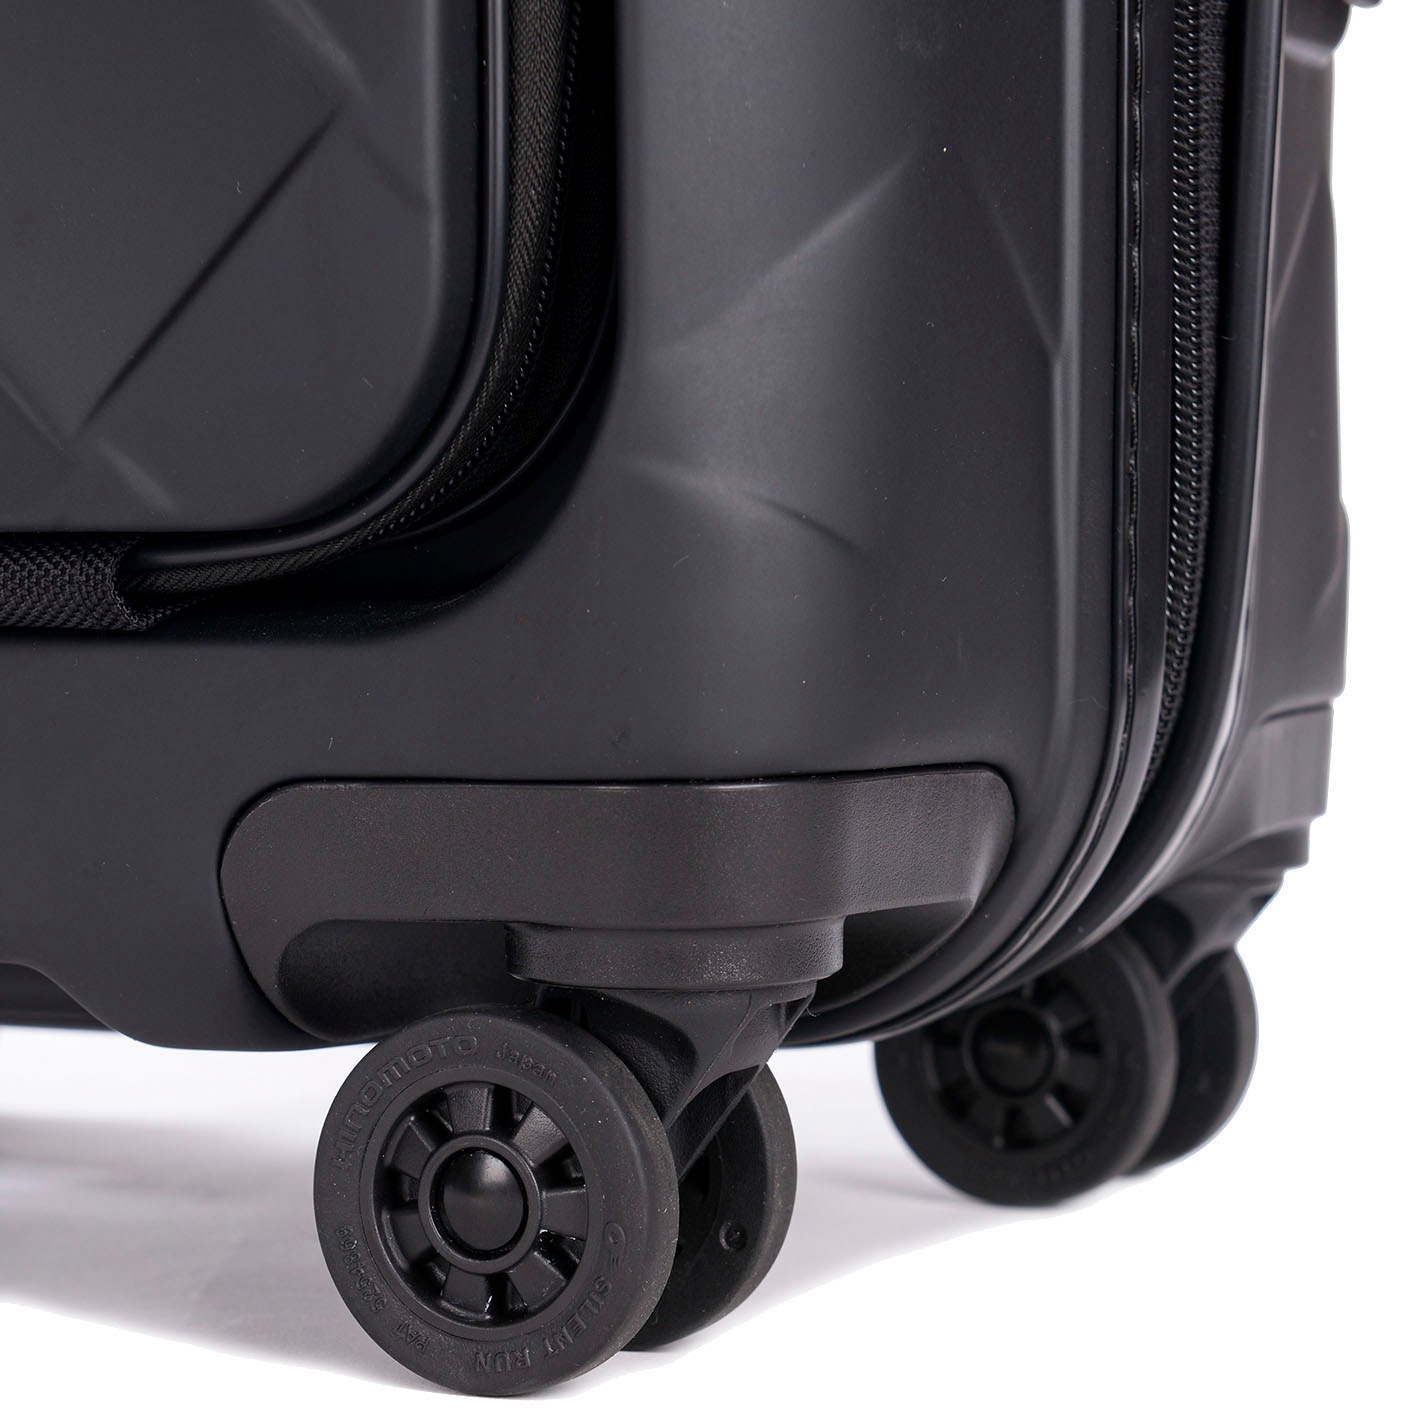 Stratic Hartschalen-Trolley »Leather&More S mit Vortasche, matt black«, 4 Rollen, Handgepäck Reisekoffer Reisegepäck TSA-Zahlenschloss